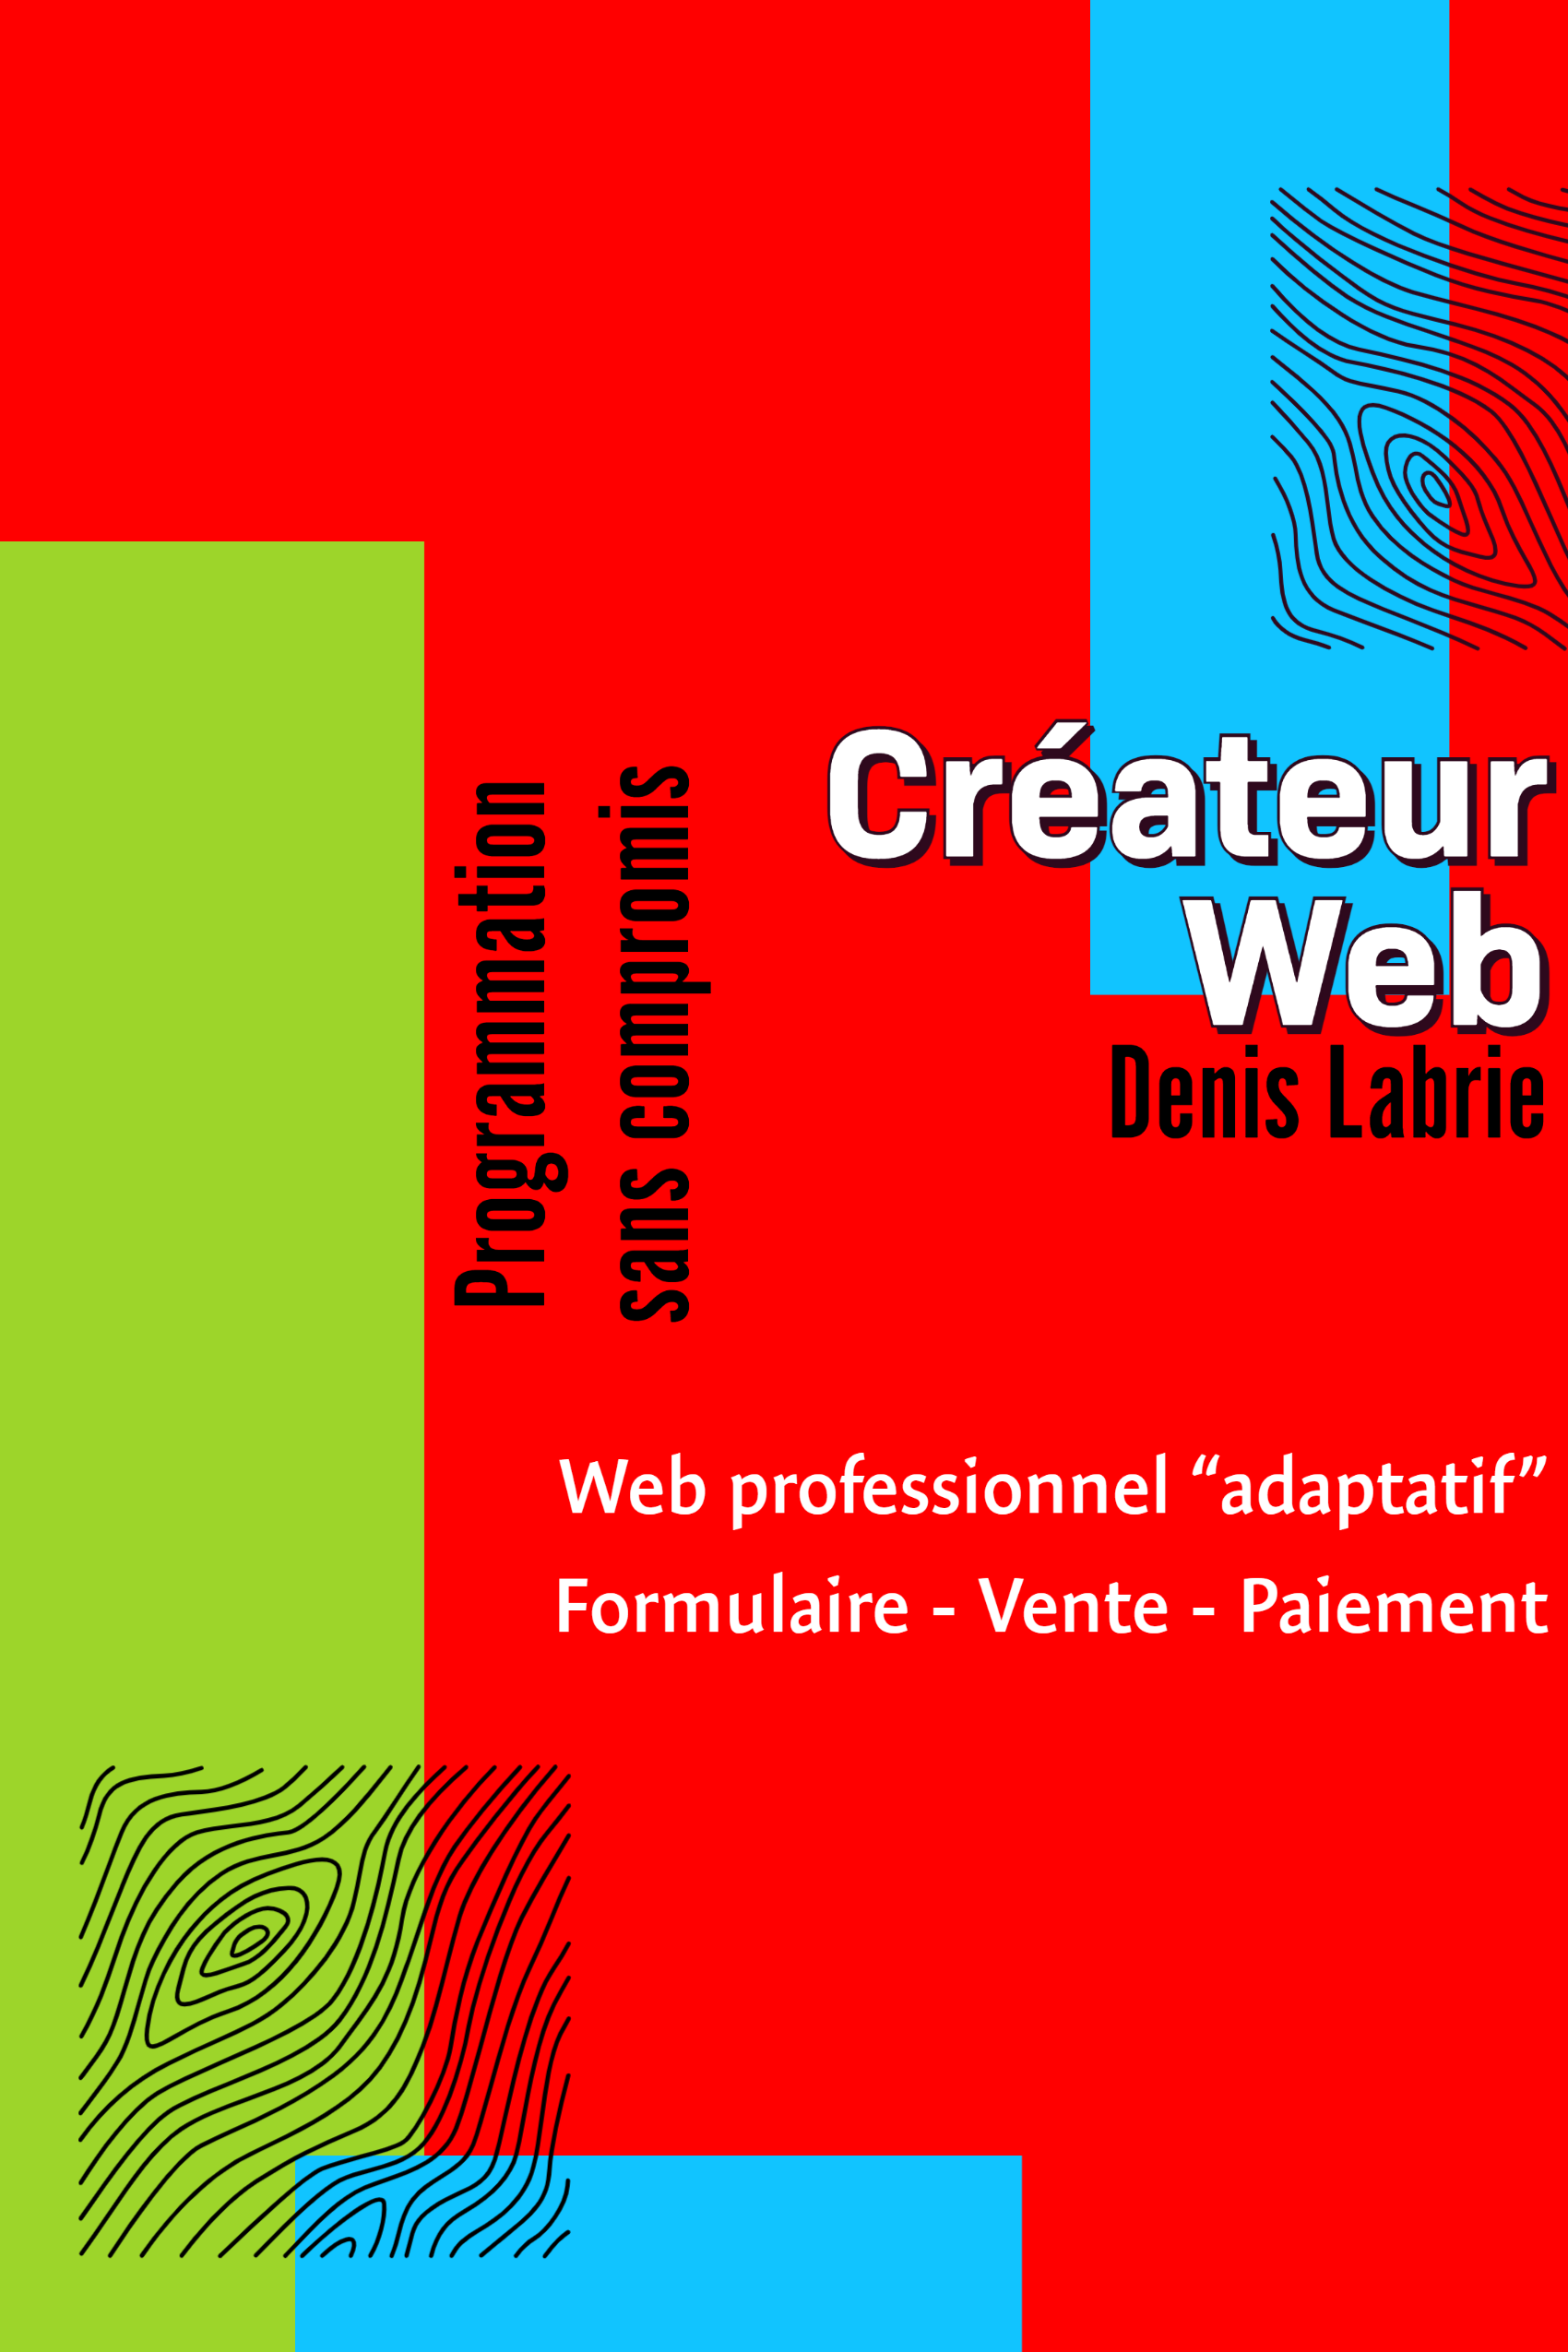 Denis Labrie - Concepteur Web